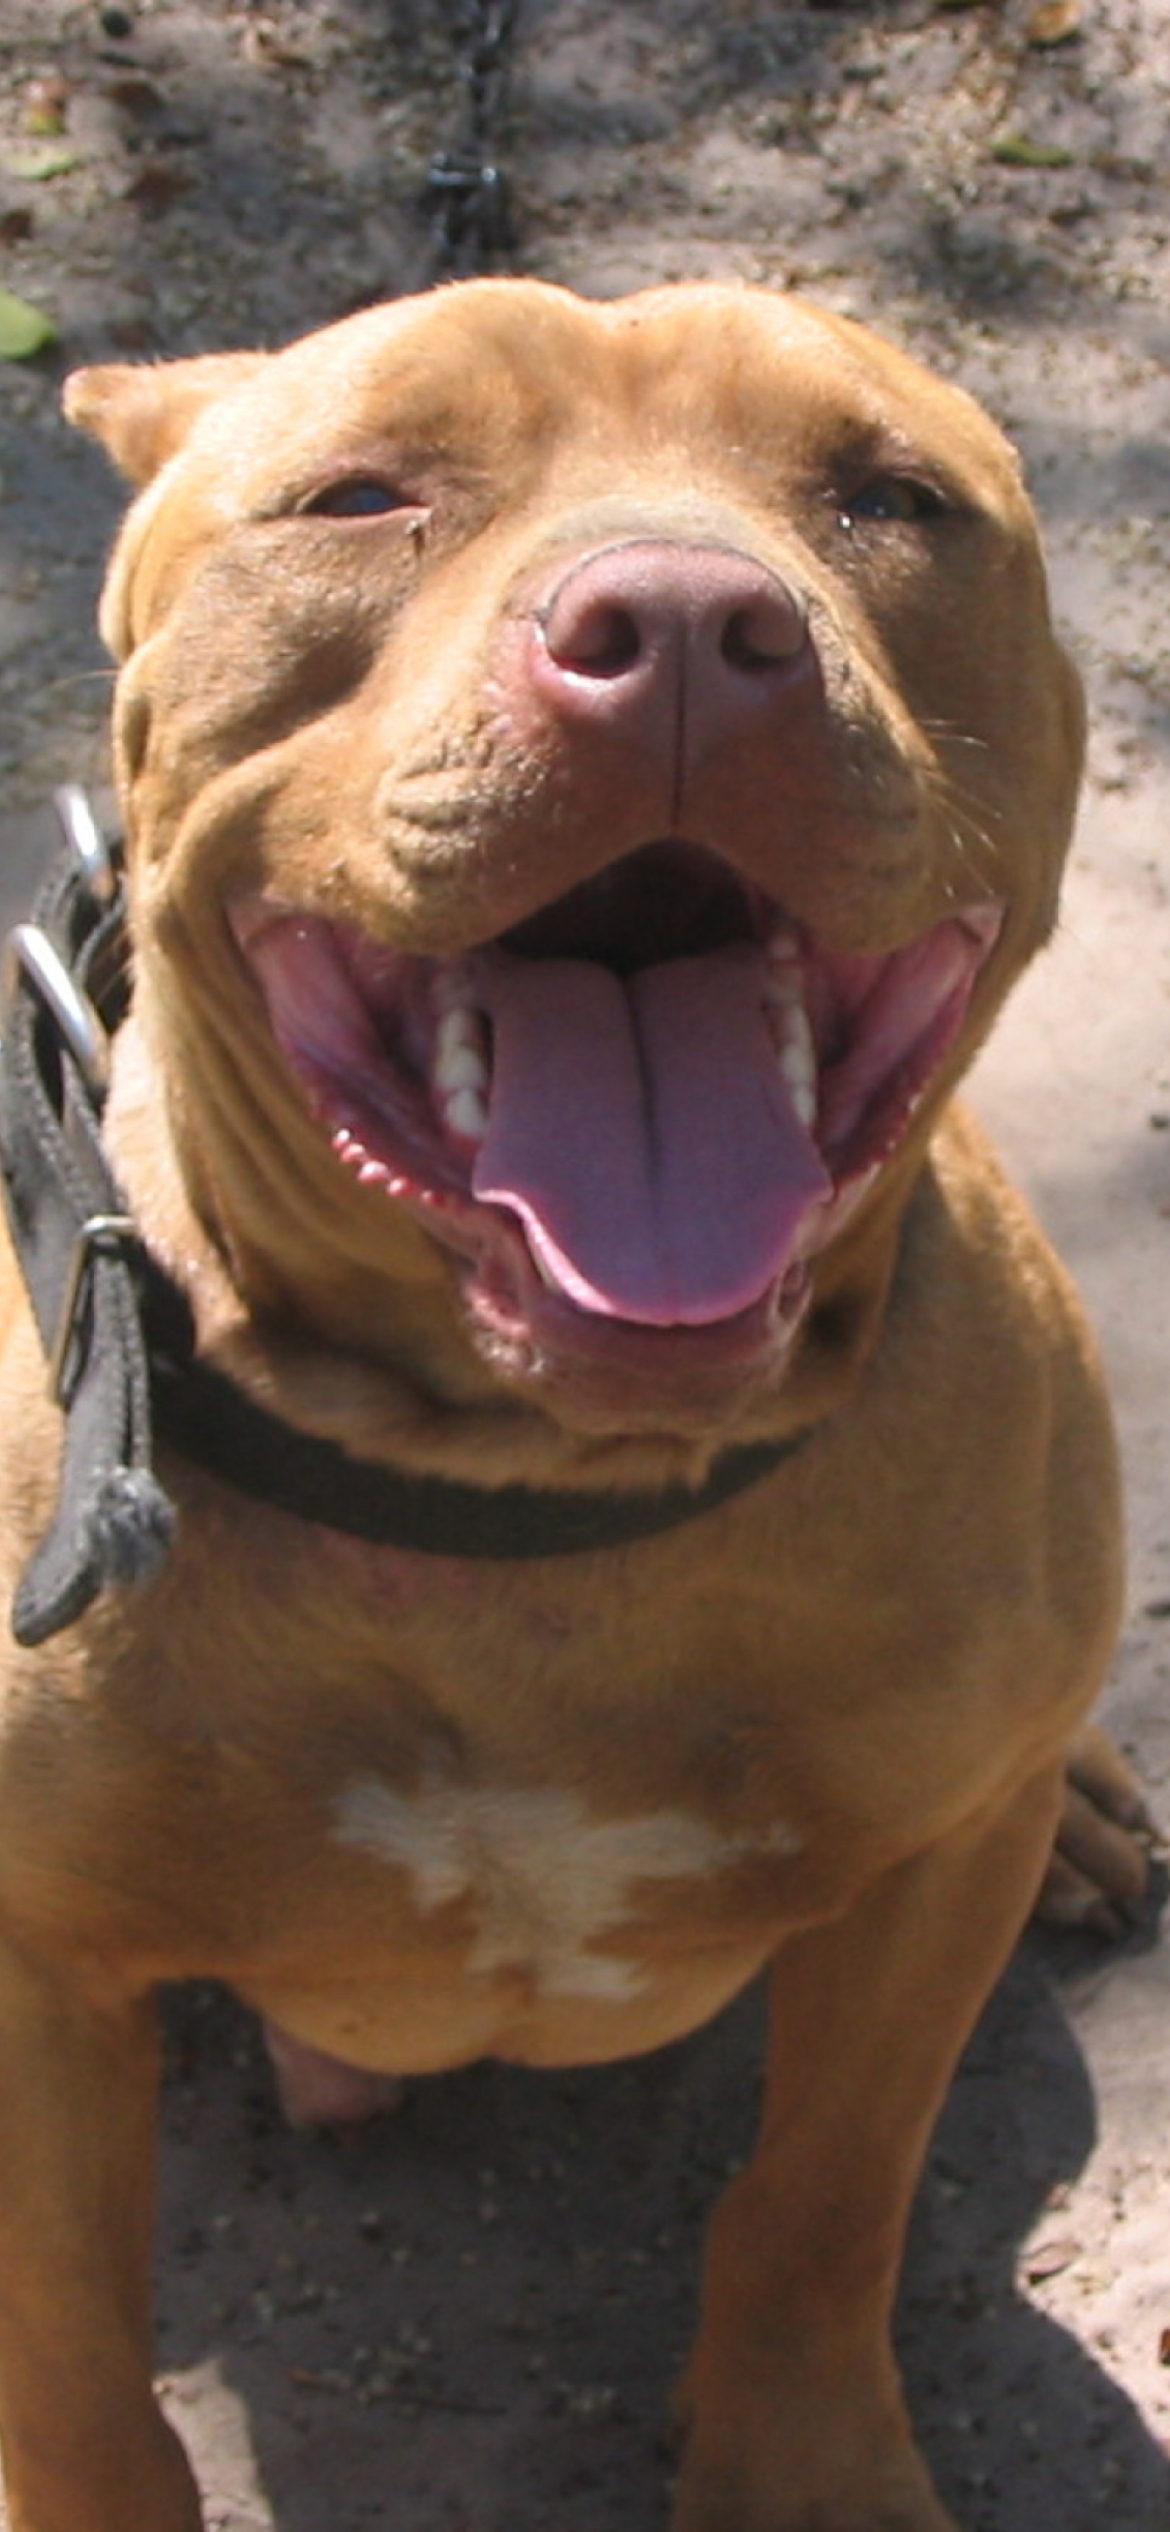 American Pit Bull Terrier - Fondos de pantalla gratis para iPhone 12 Pro